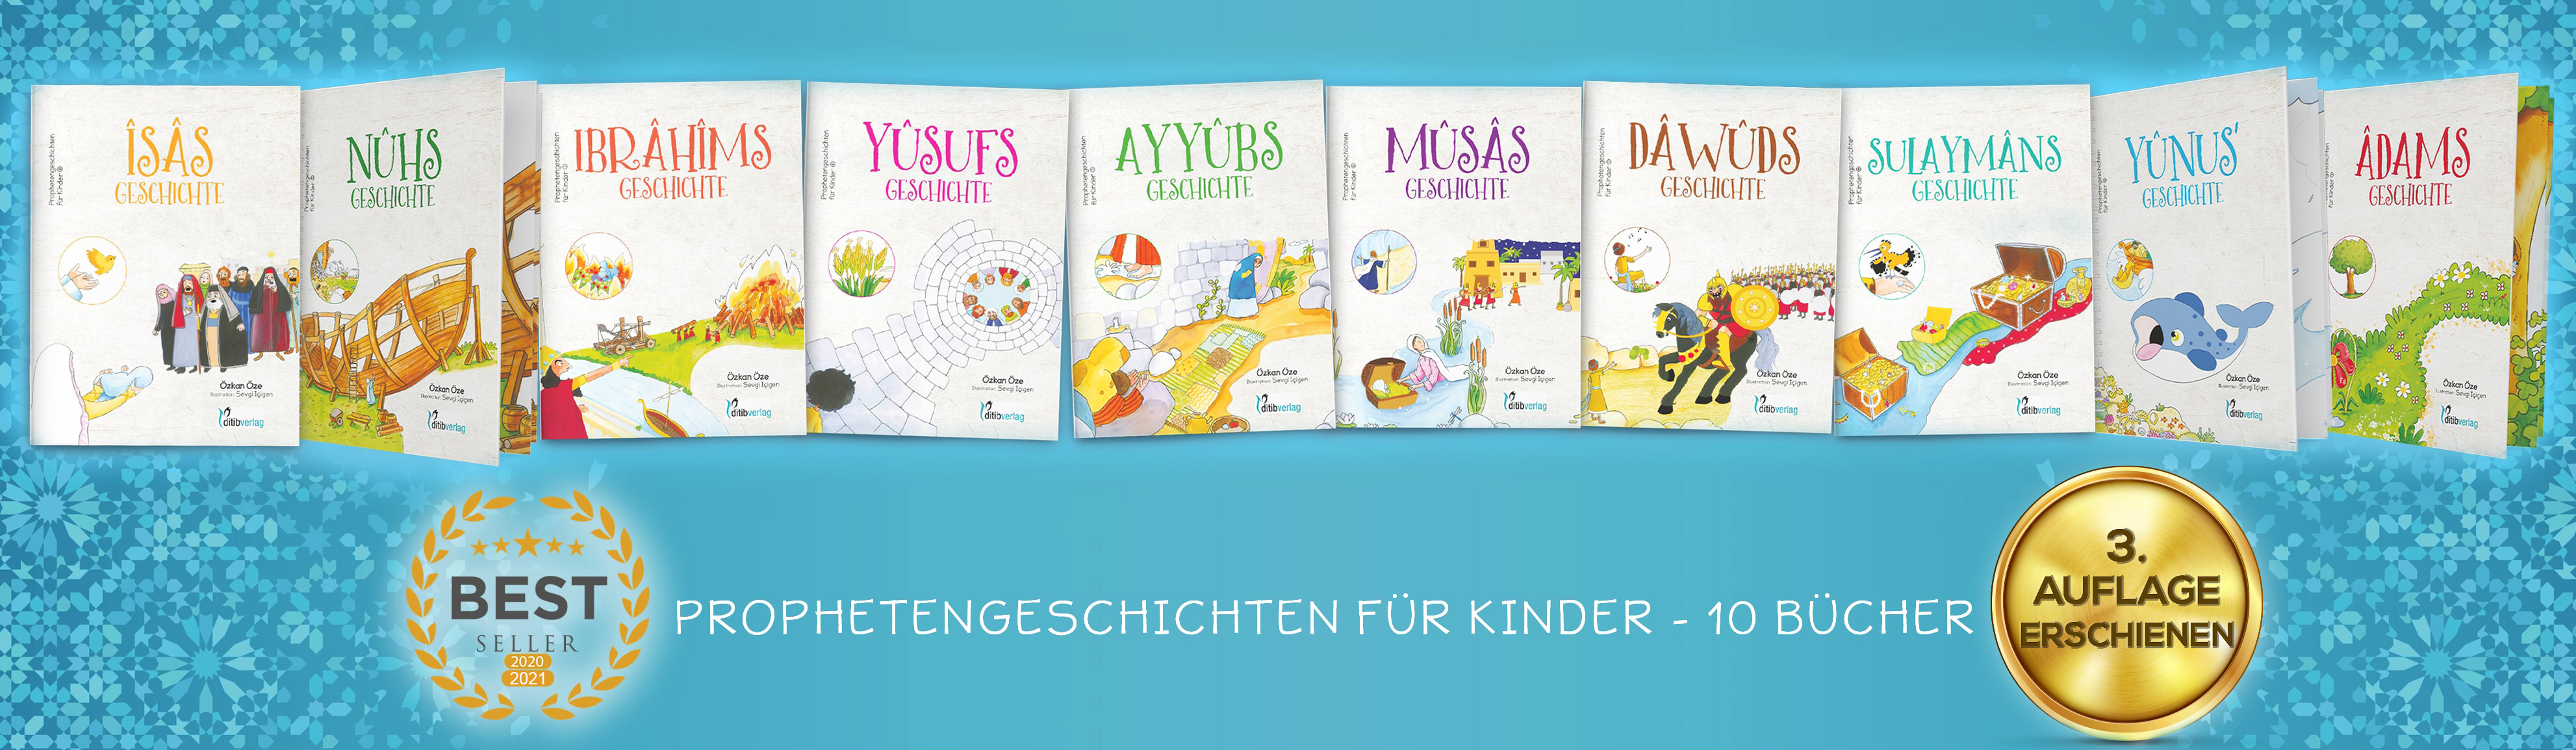 TOP SELLER: Prophetengeschichten für Kinder - 10 Bücher im Set